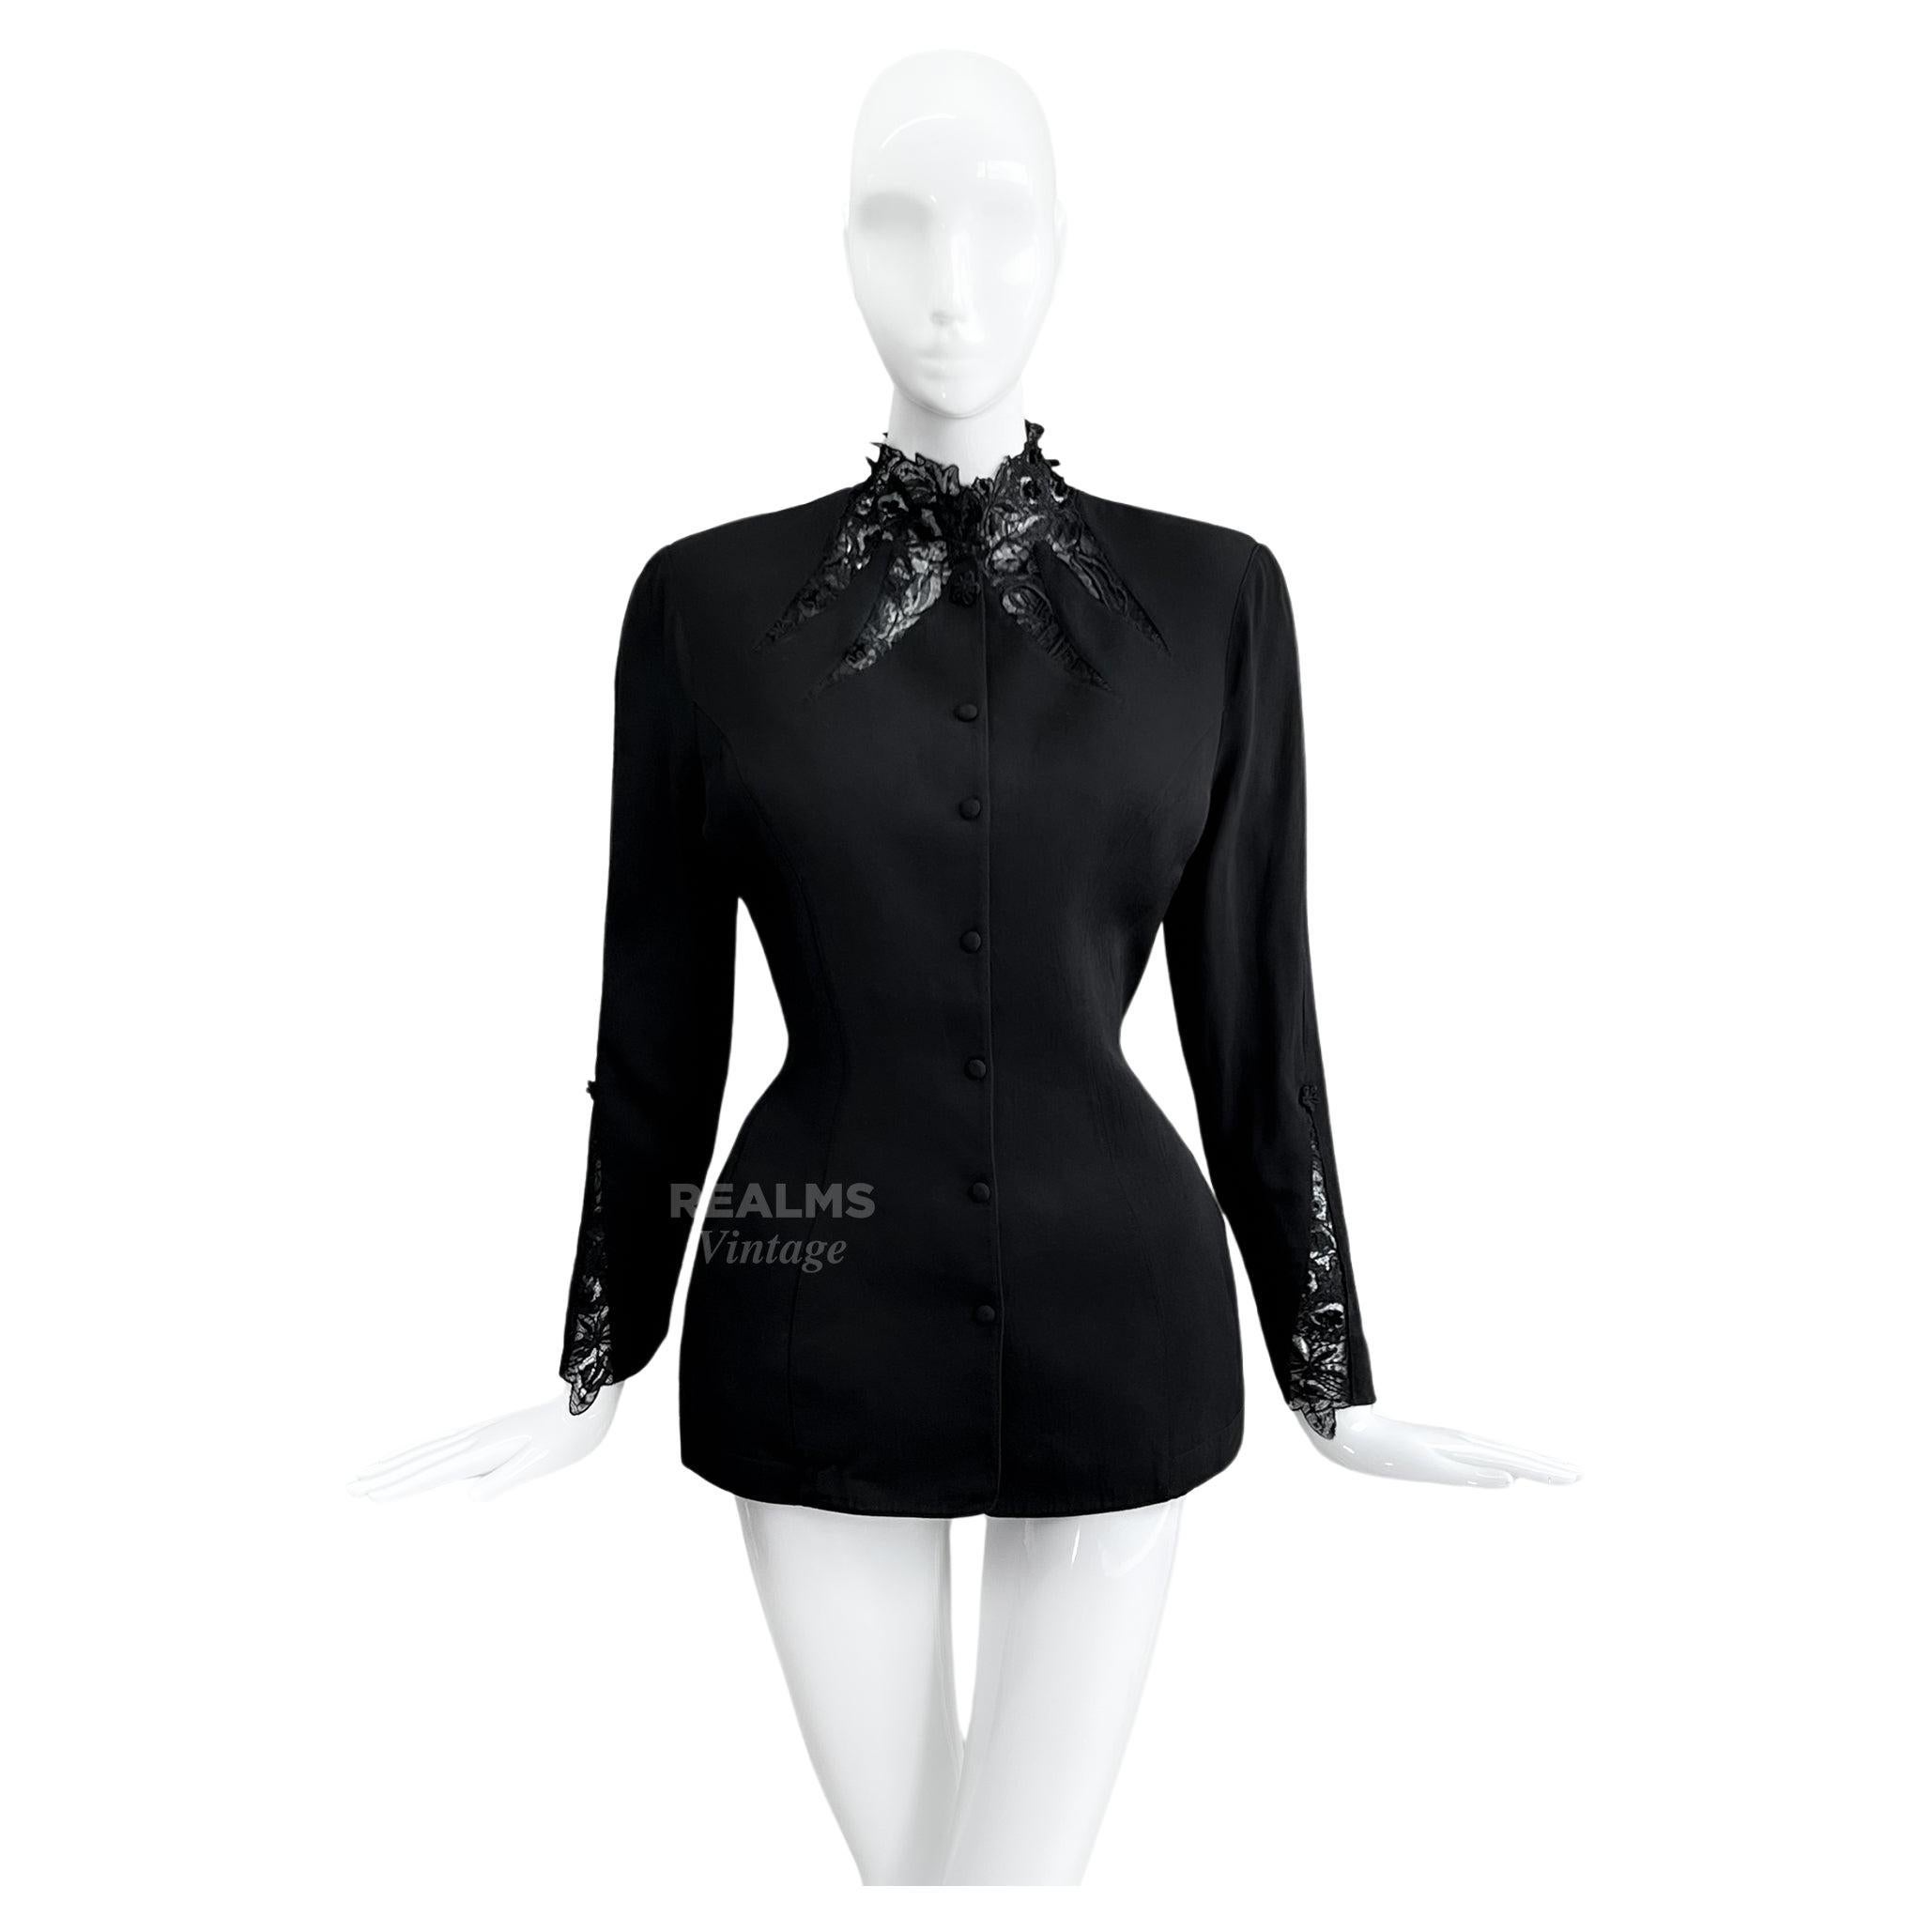 
Verführerische schwarze Jacke von Thierry Mugler mit fabelhaften Spitzendetails am Ausschnitt. Wunderschöne taillierte Jacke aus der SS 1992 Collection'S. Fabelhafte Schnittführung, superfeminine, taillierte Silhouette.
Der perfekte